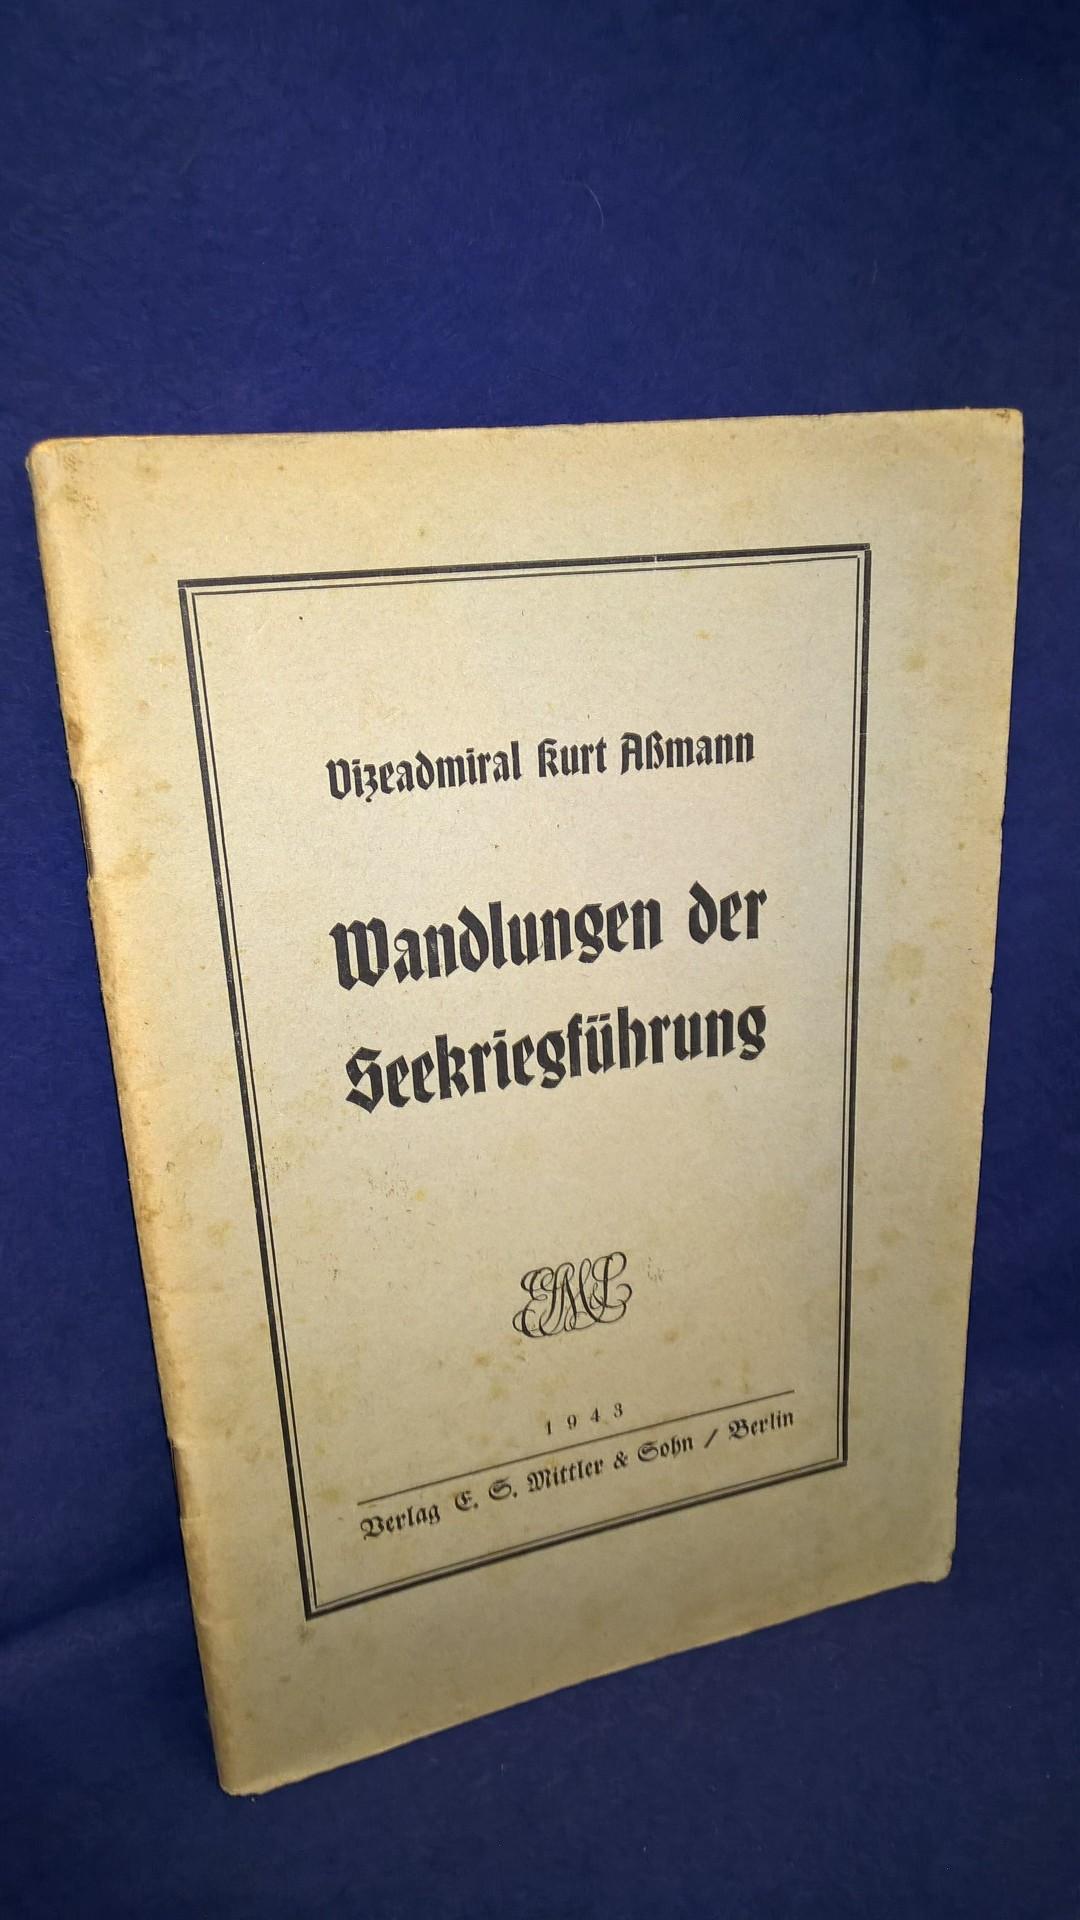 Wandlungen der Seekriegführung. Vortrag des Admirals Aßmann im Jahre 1942 über die Wandlungen des Seekriegsführung für die U-Boots-Waffen,Luftwaffe und der Wirtschaftskrieg.